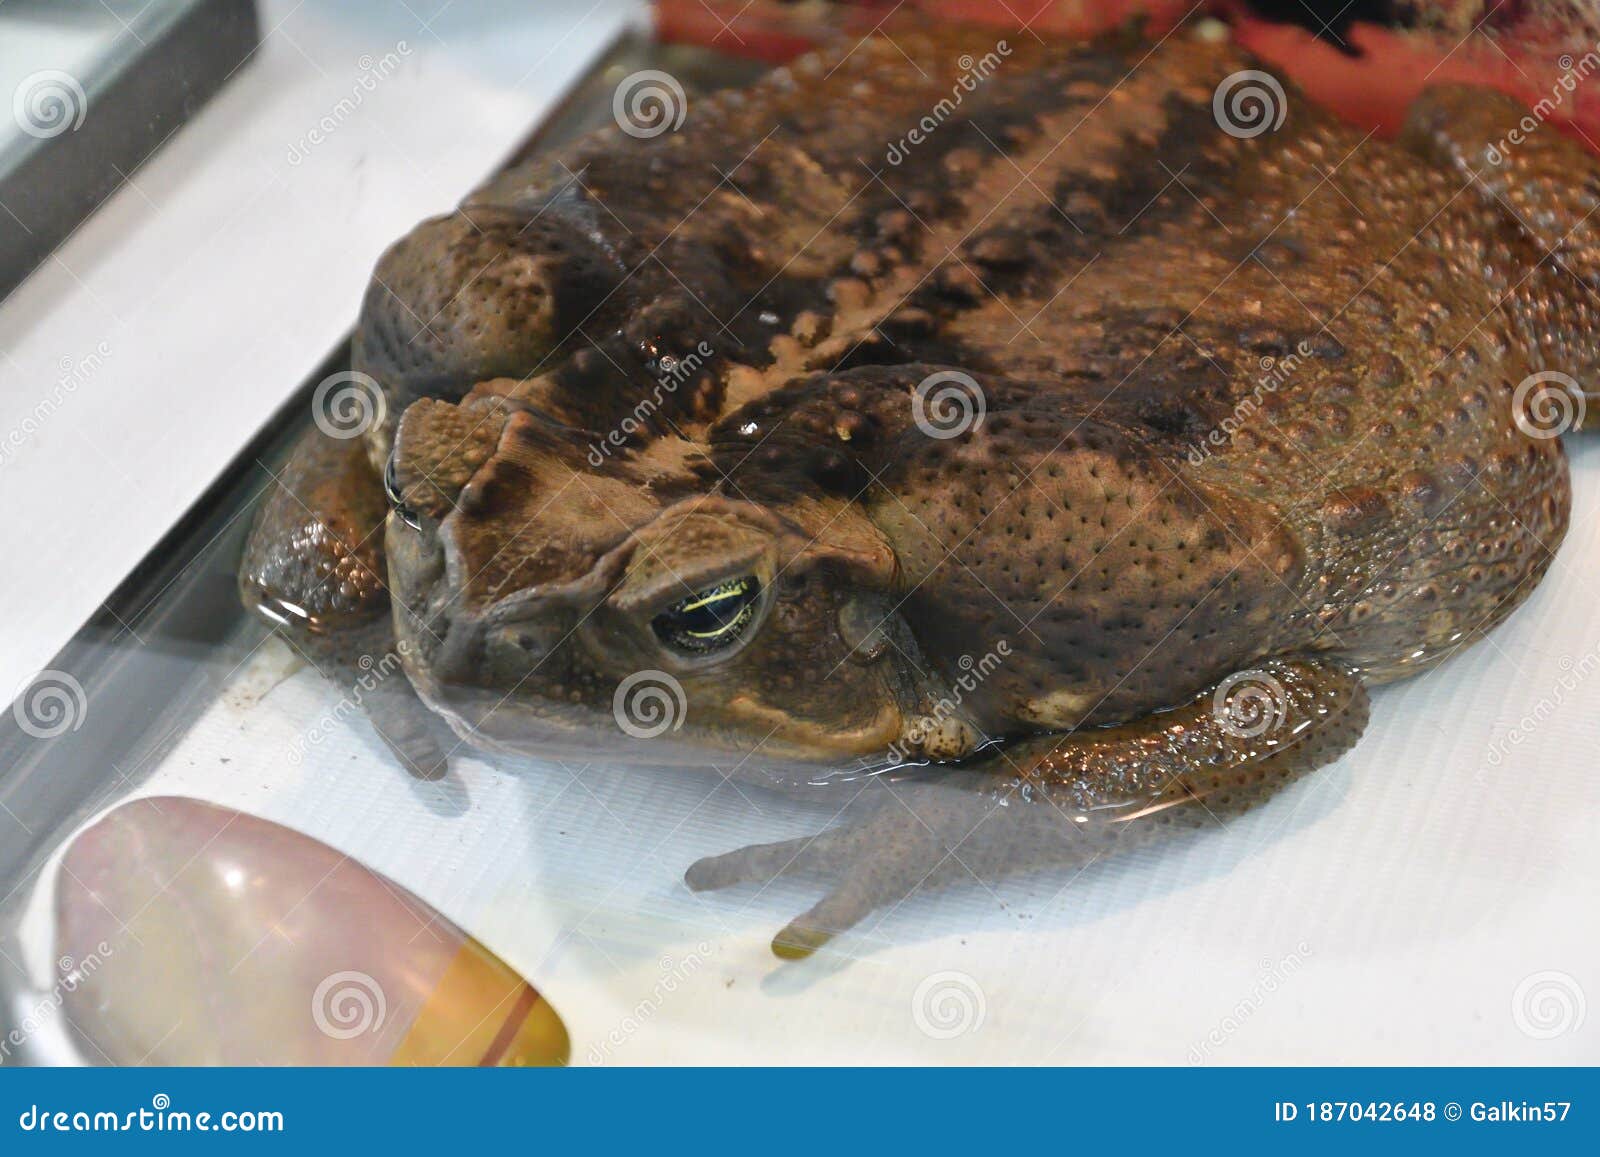 toad-aha or aha latin. rhinella marina in terrarium